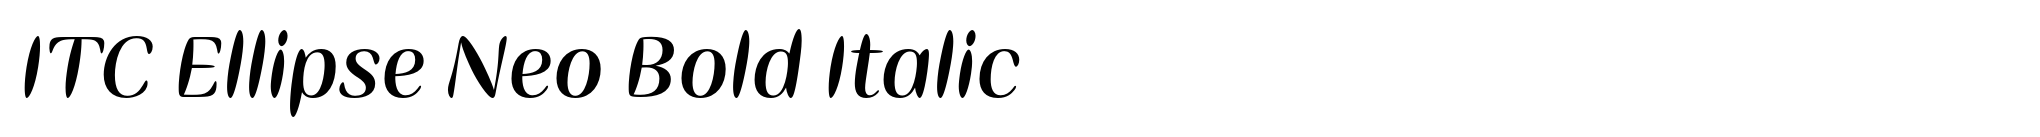 ITC Ellipse Neo Bold Italic image